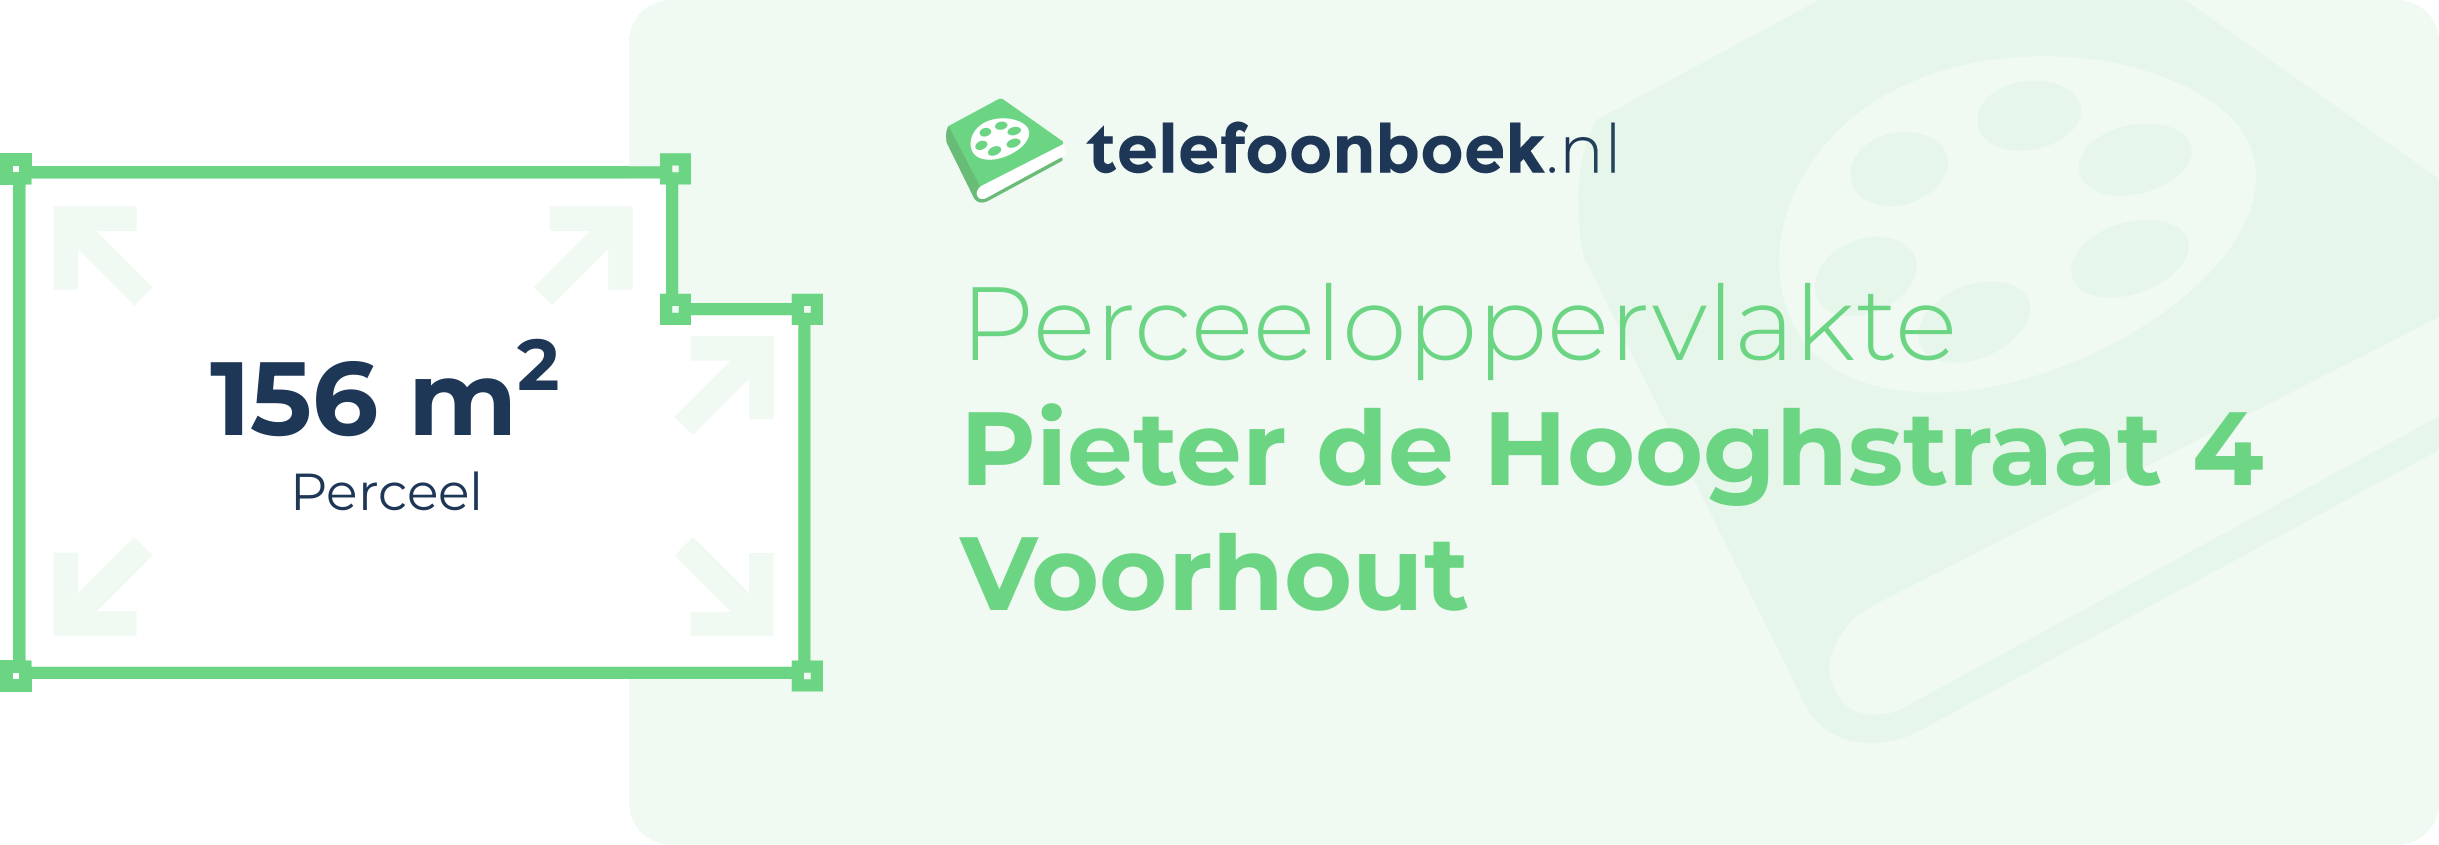 Perceeloppervlakte Pieter De Hooghstraat 4 Voorhout